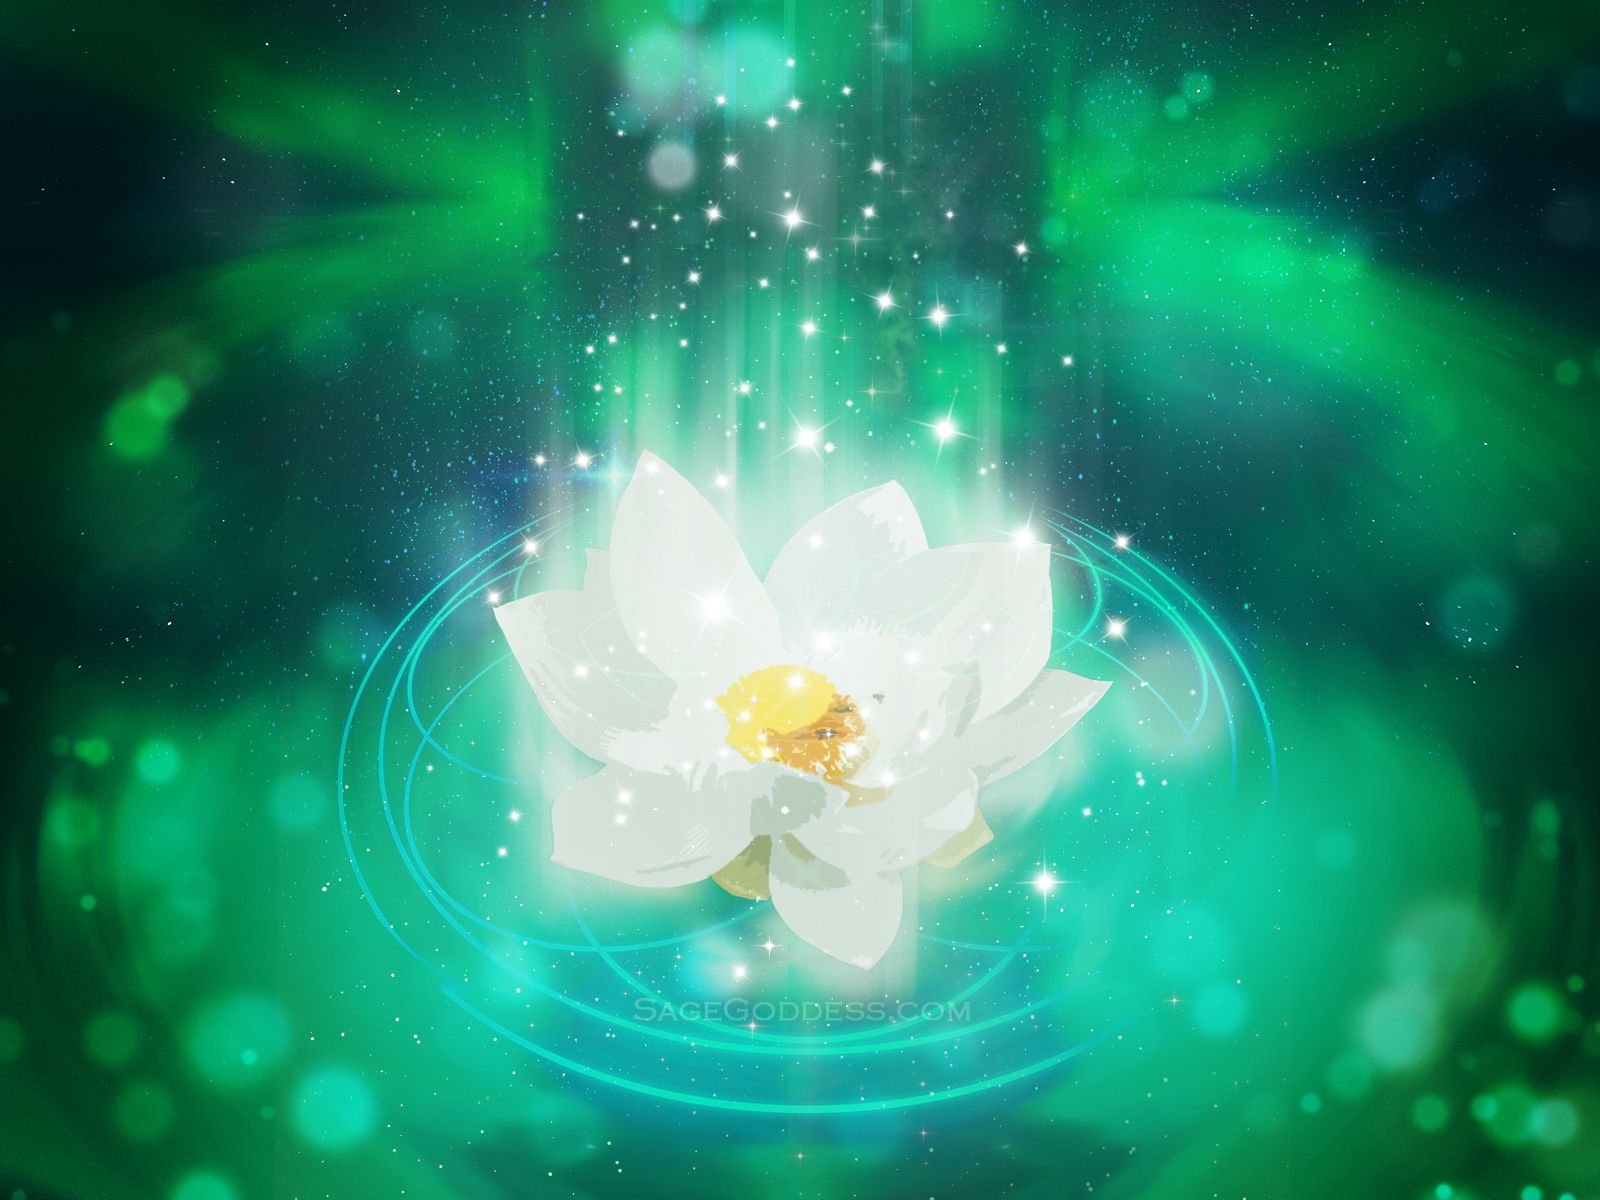 Free Custom Sage Goddess Downloadable Lotus Flower Wallpaper